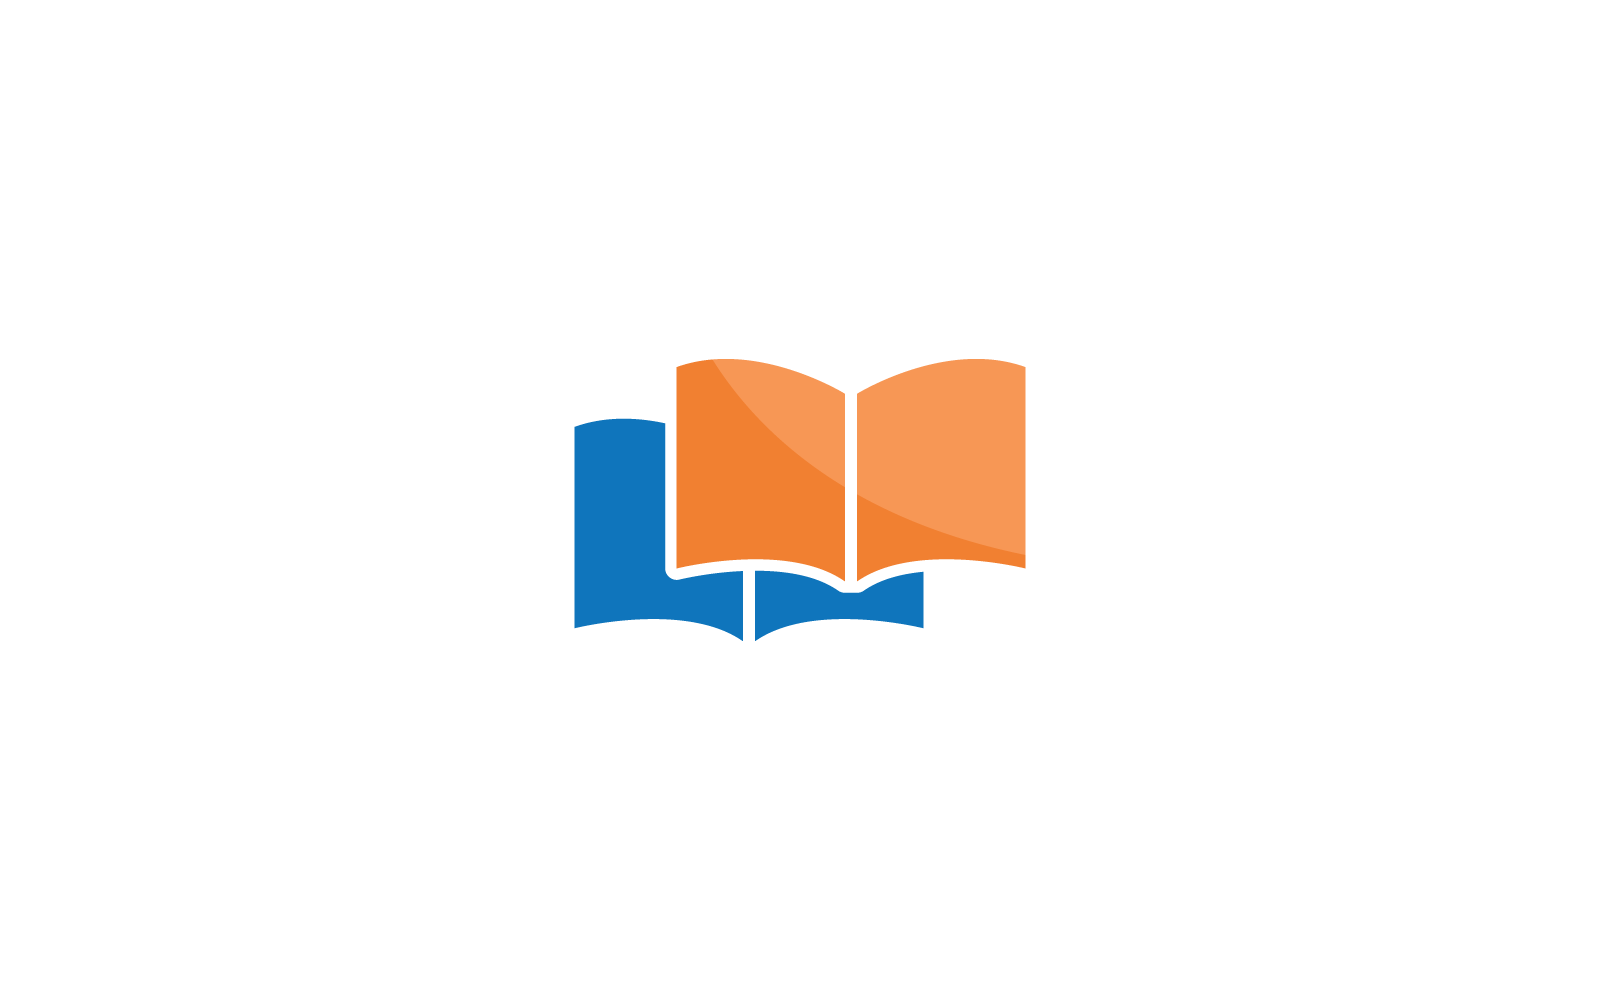 Livre éducation logo vectoriel design plat